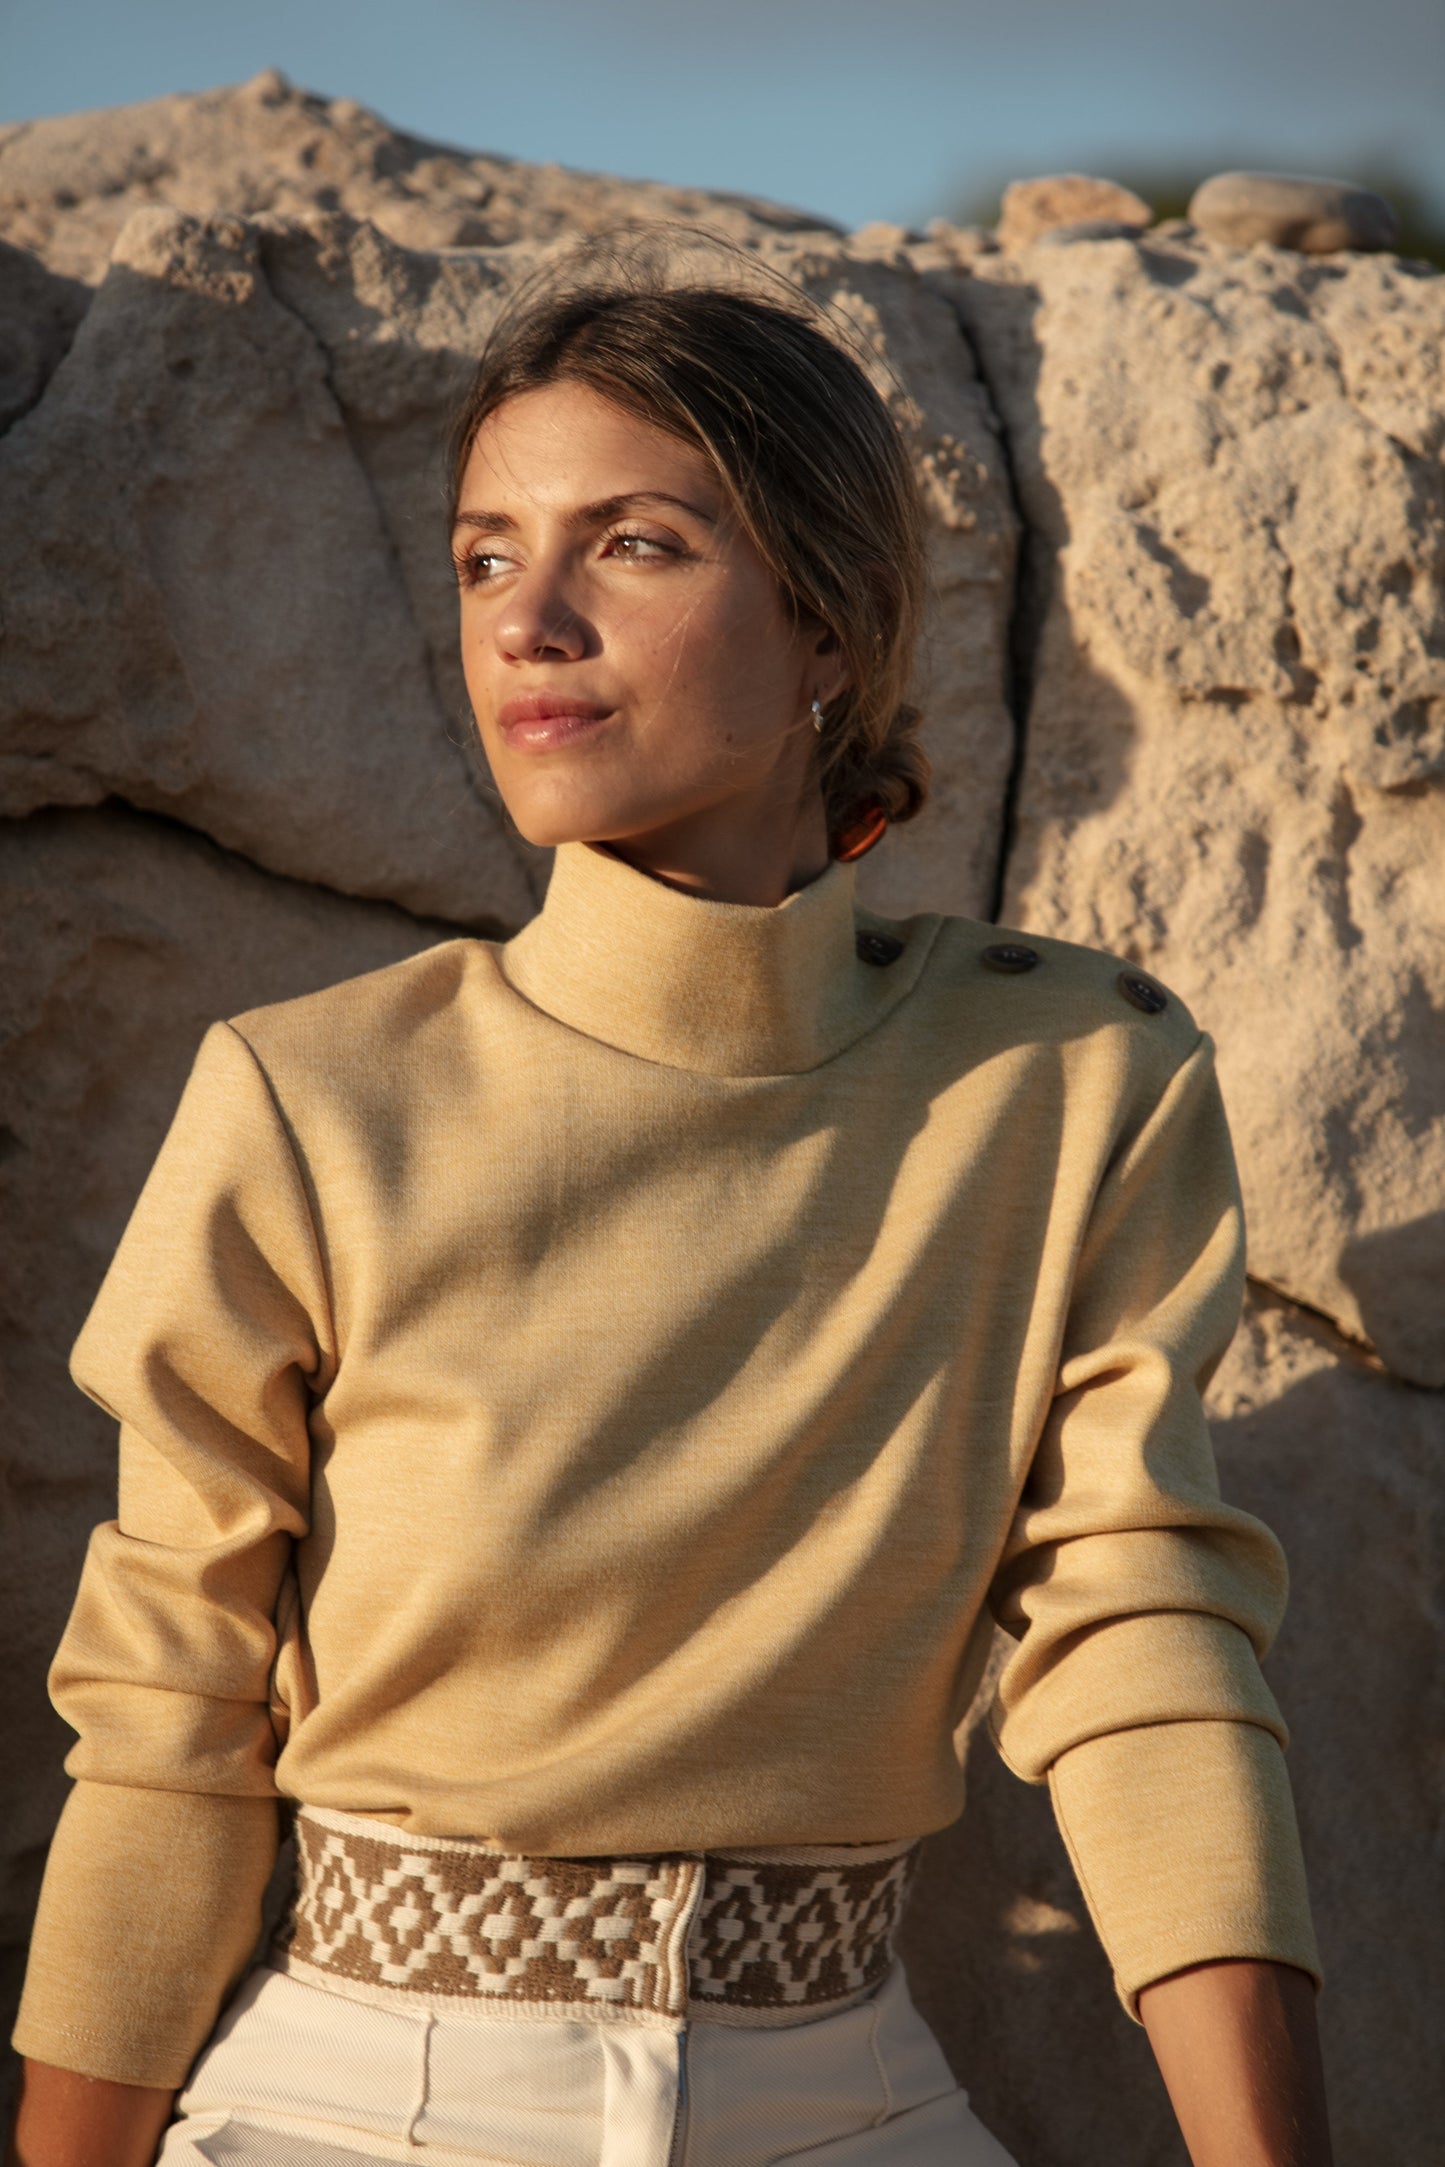 LUTAN RG -  High Collar Sweater in Twisted Wool Jersey